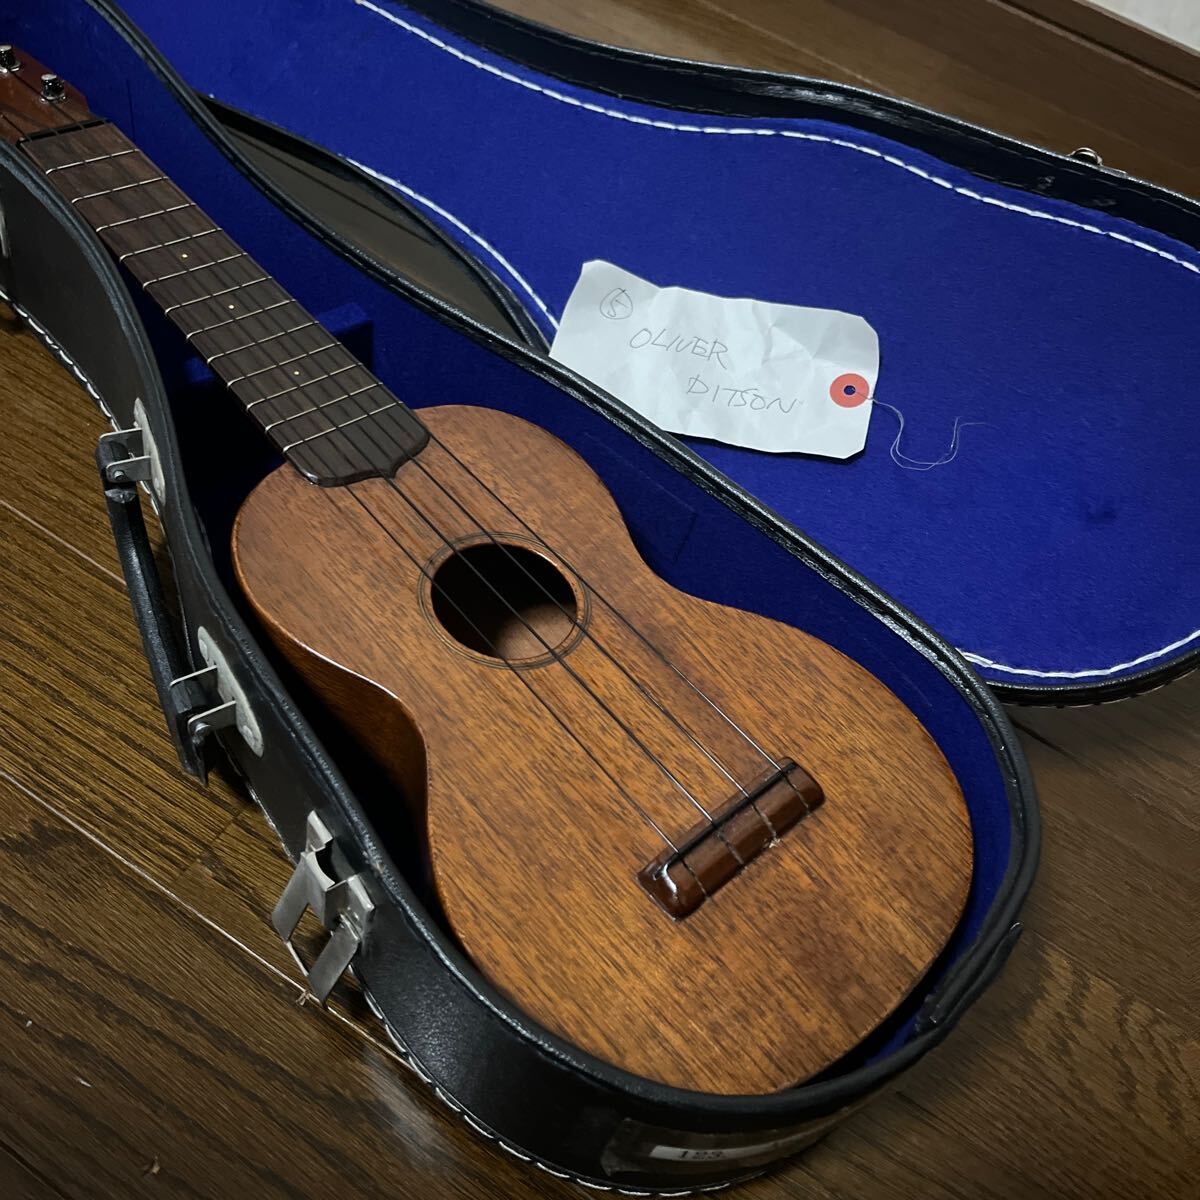  ukulele OLIVER DITSON stringed instruments case attaching 